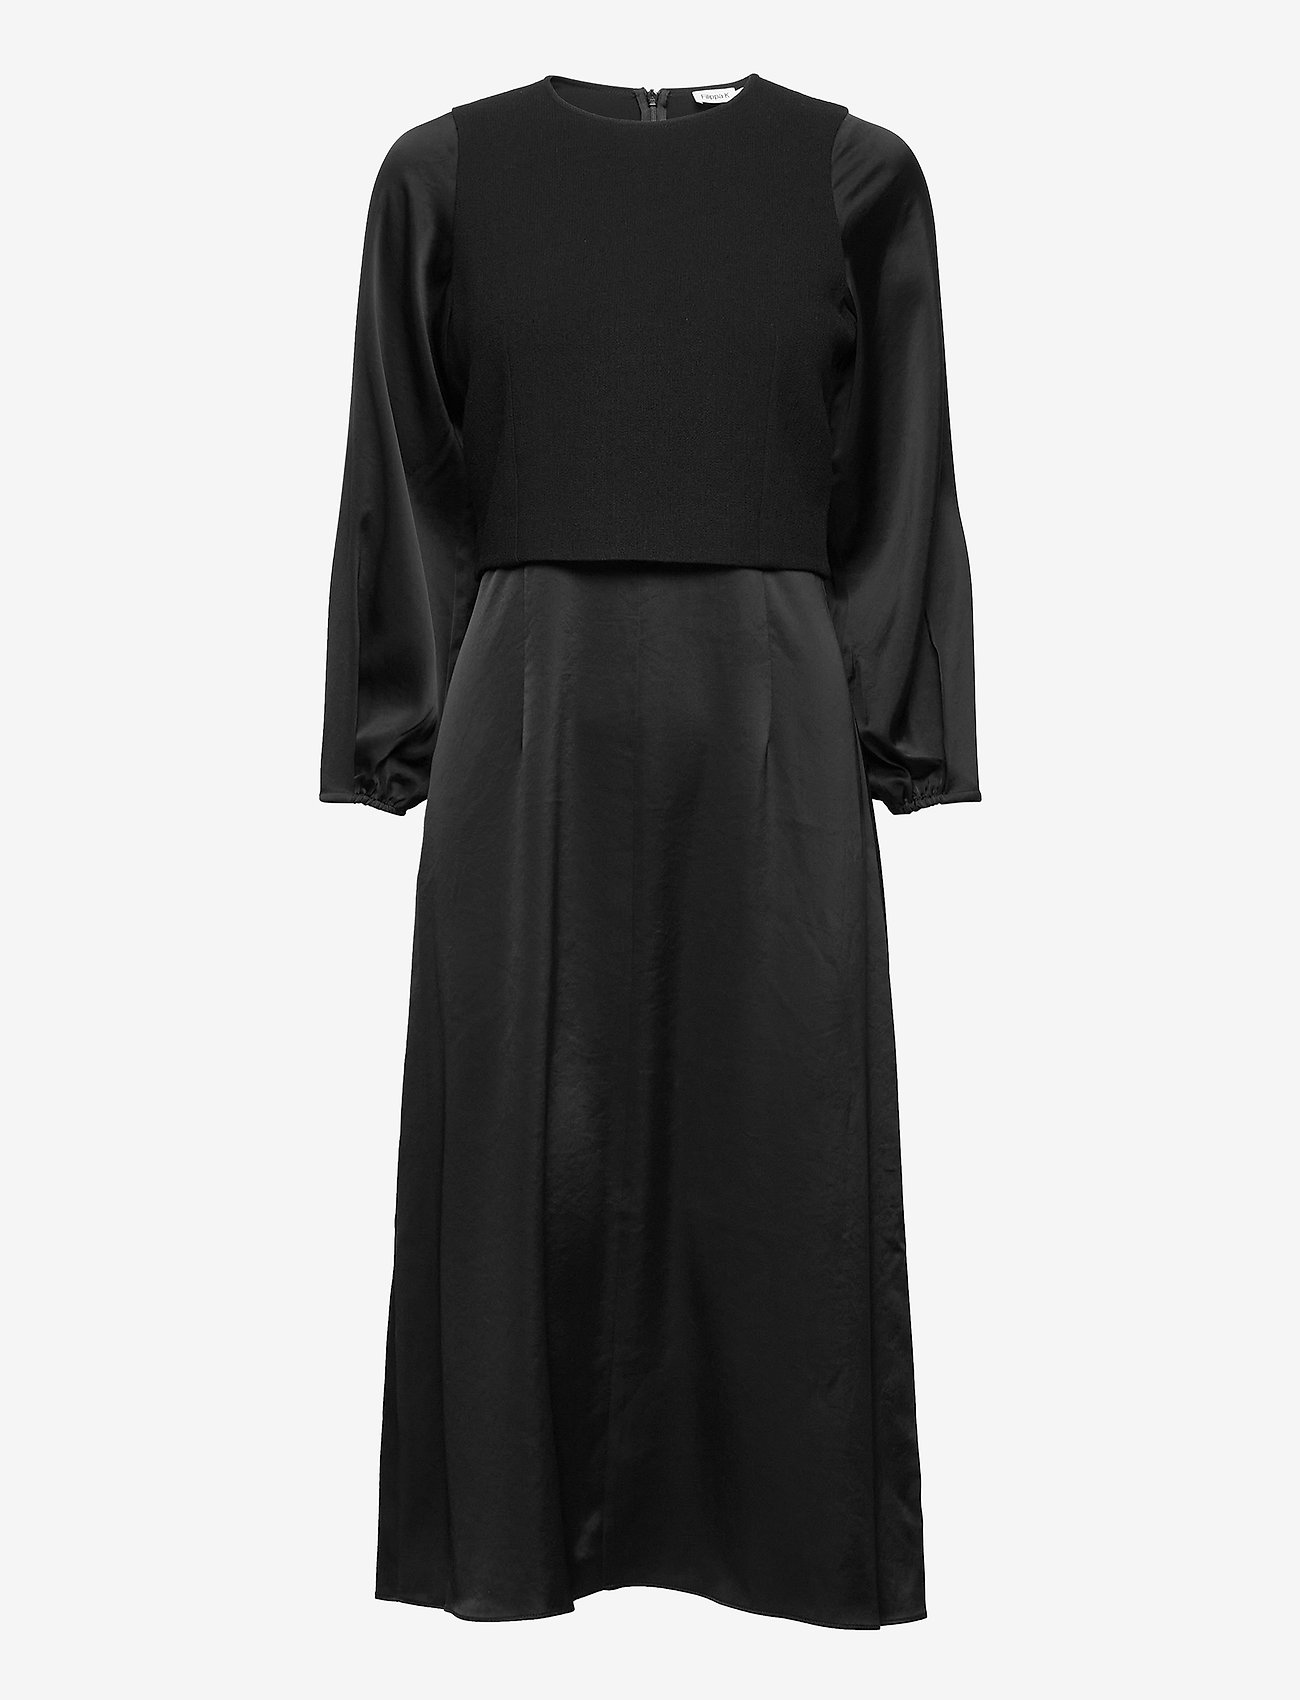 Filippa K - Harper Dress - midikleider - black - 0